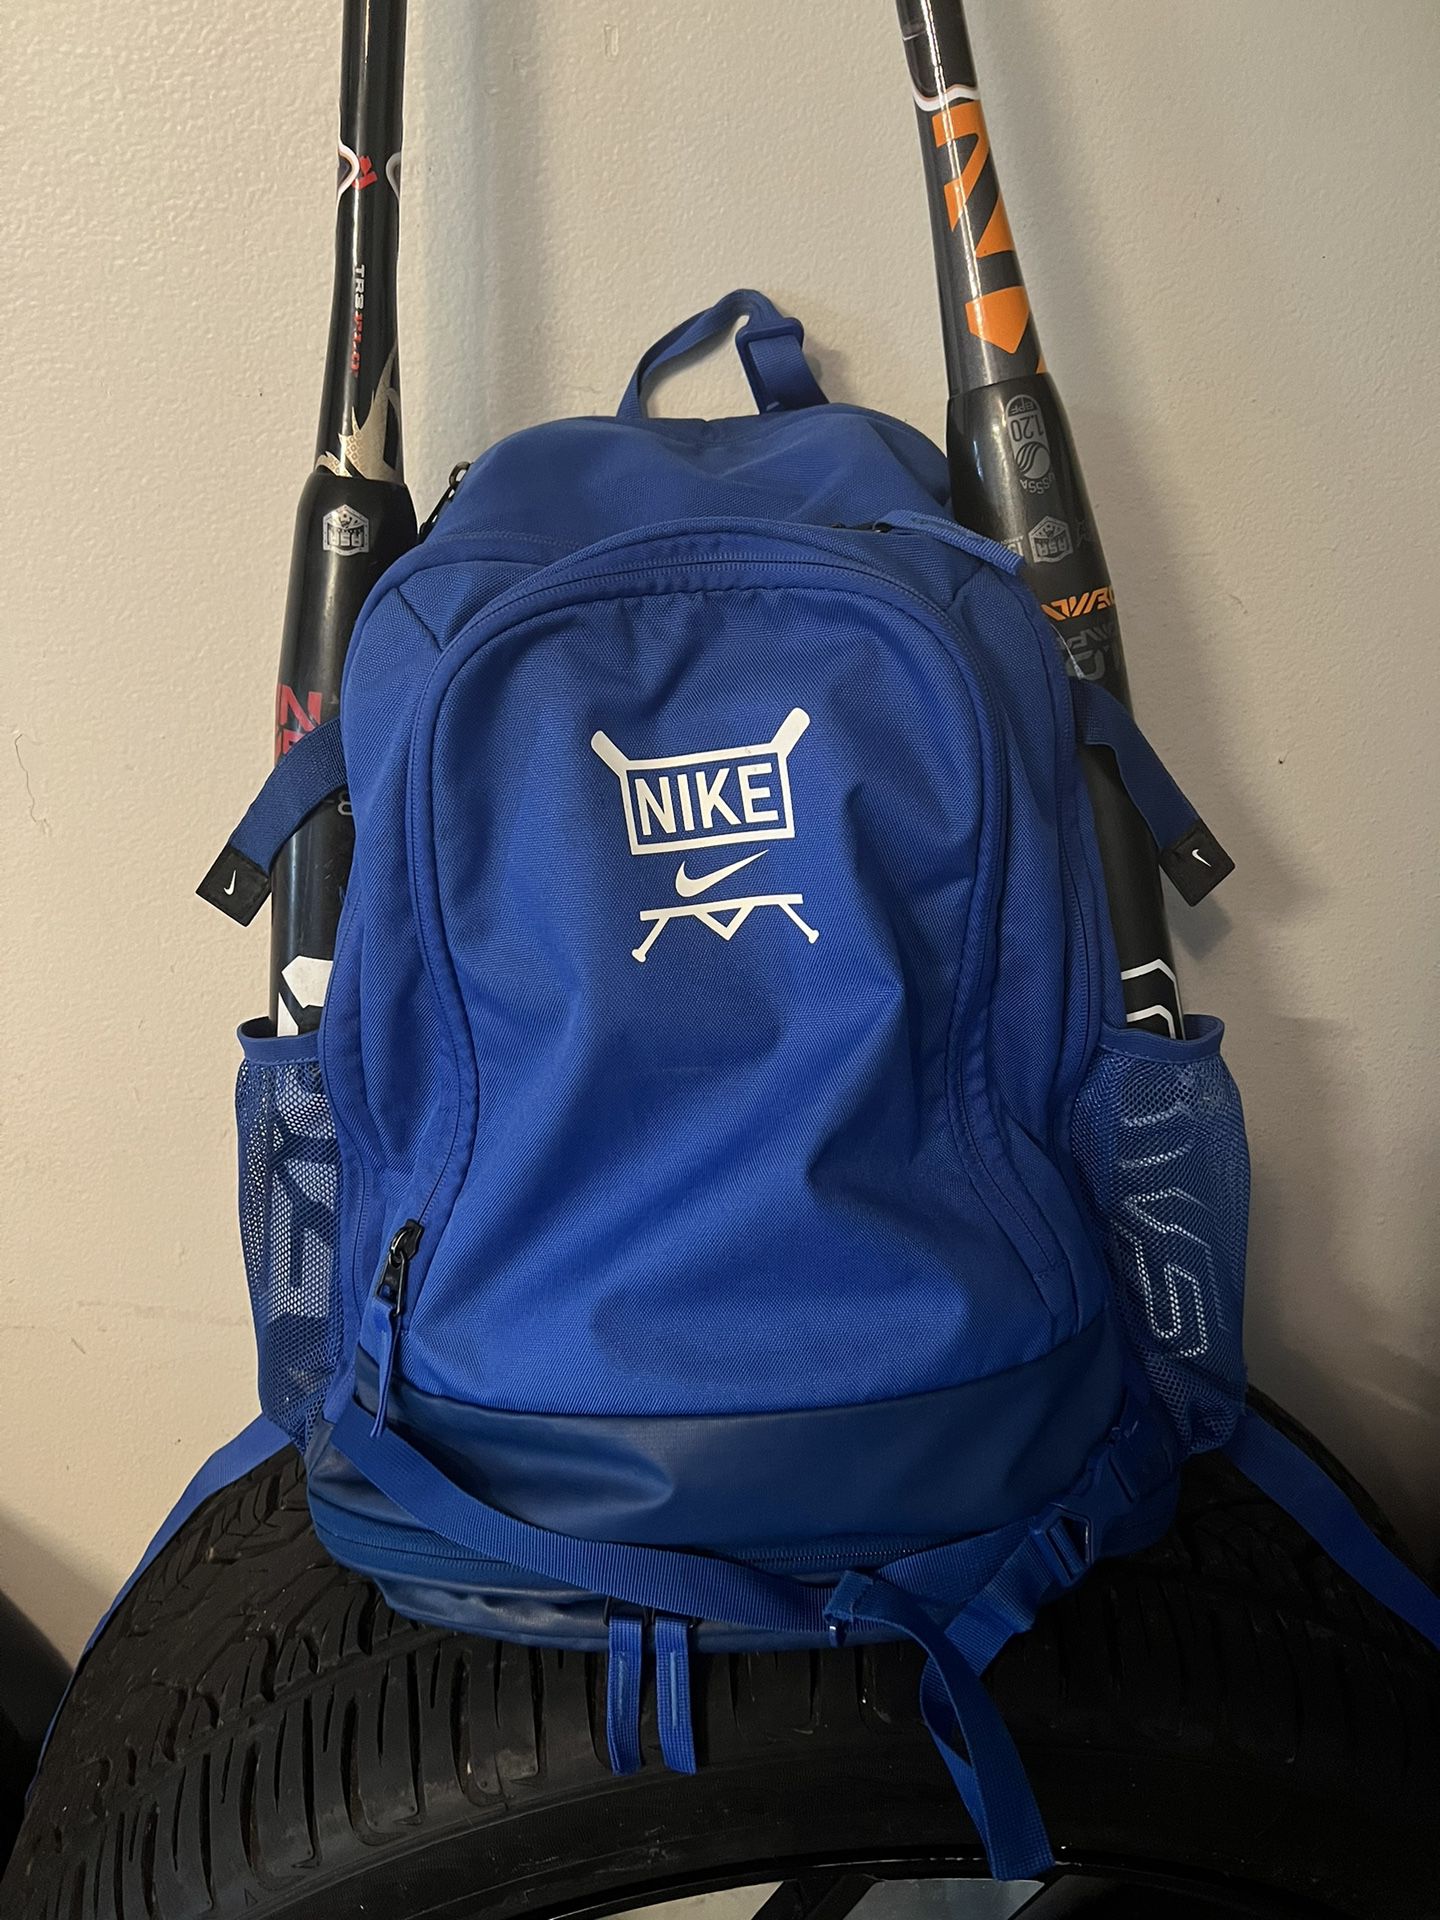 baseball/softball/slowpitch/nike backpack